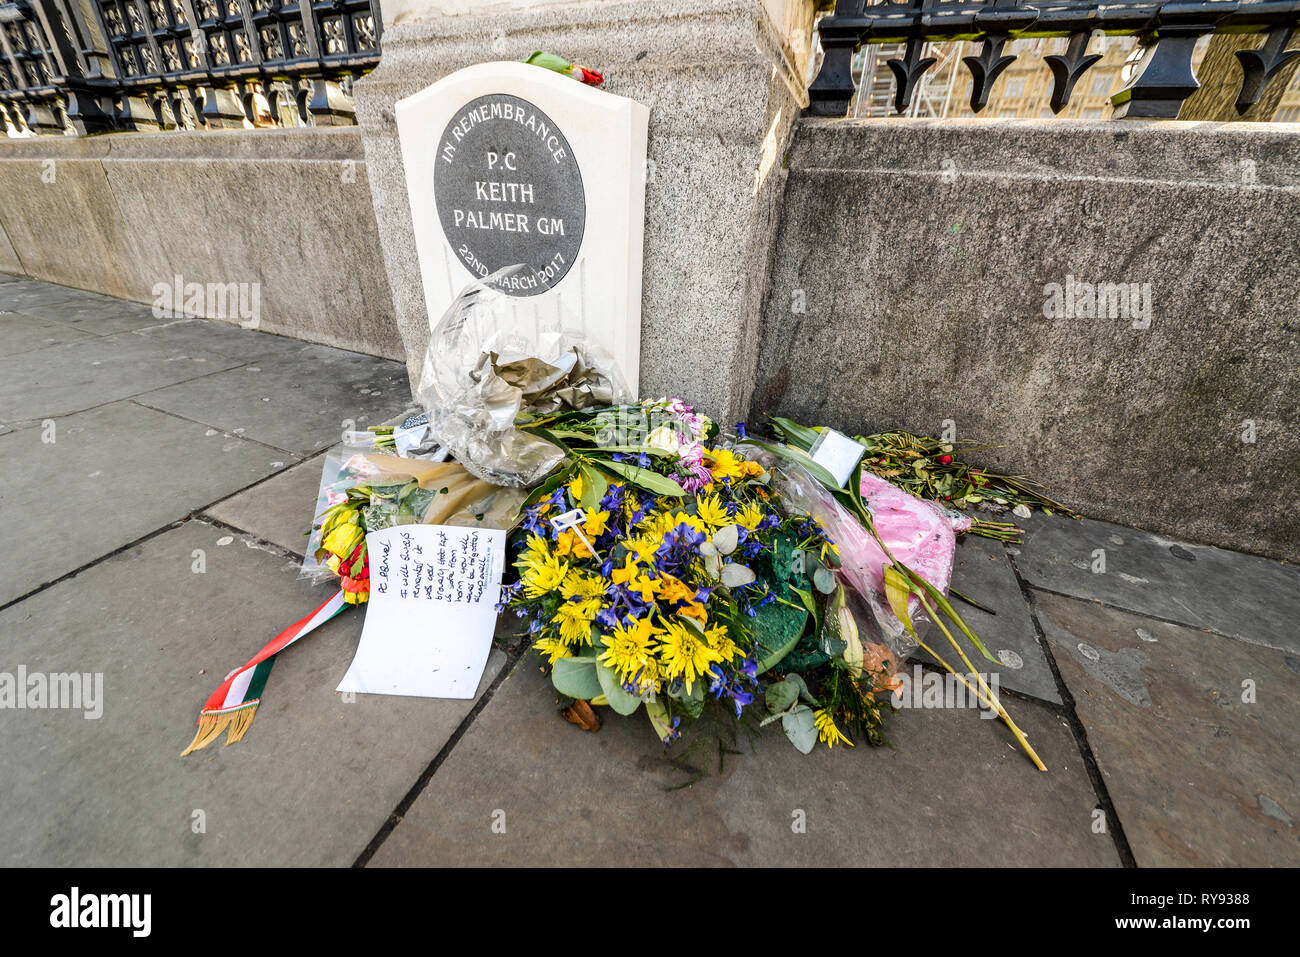 Pierre commémorative pour PC Keith Palmer GM, un policier tué par un terroriste dans le parc du Palais de Westminster. Cartes et fleurs Banque D'Images